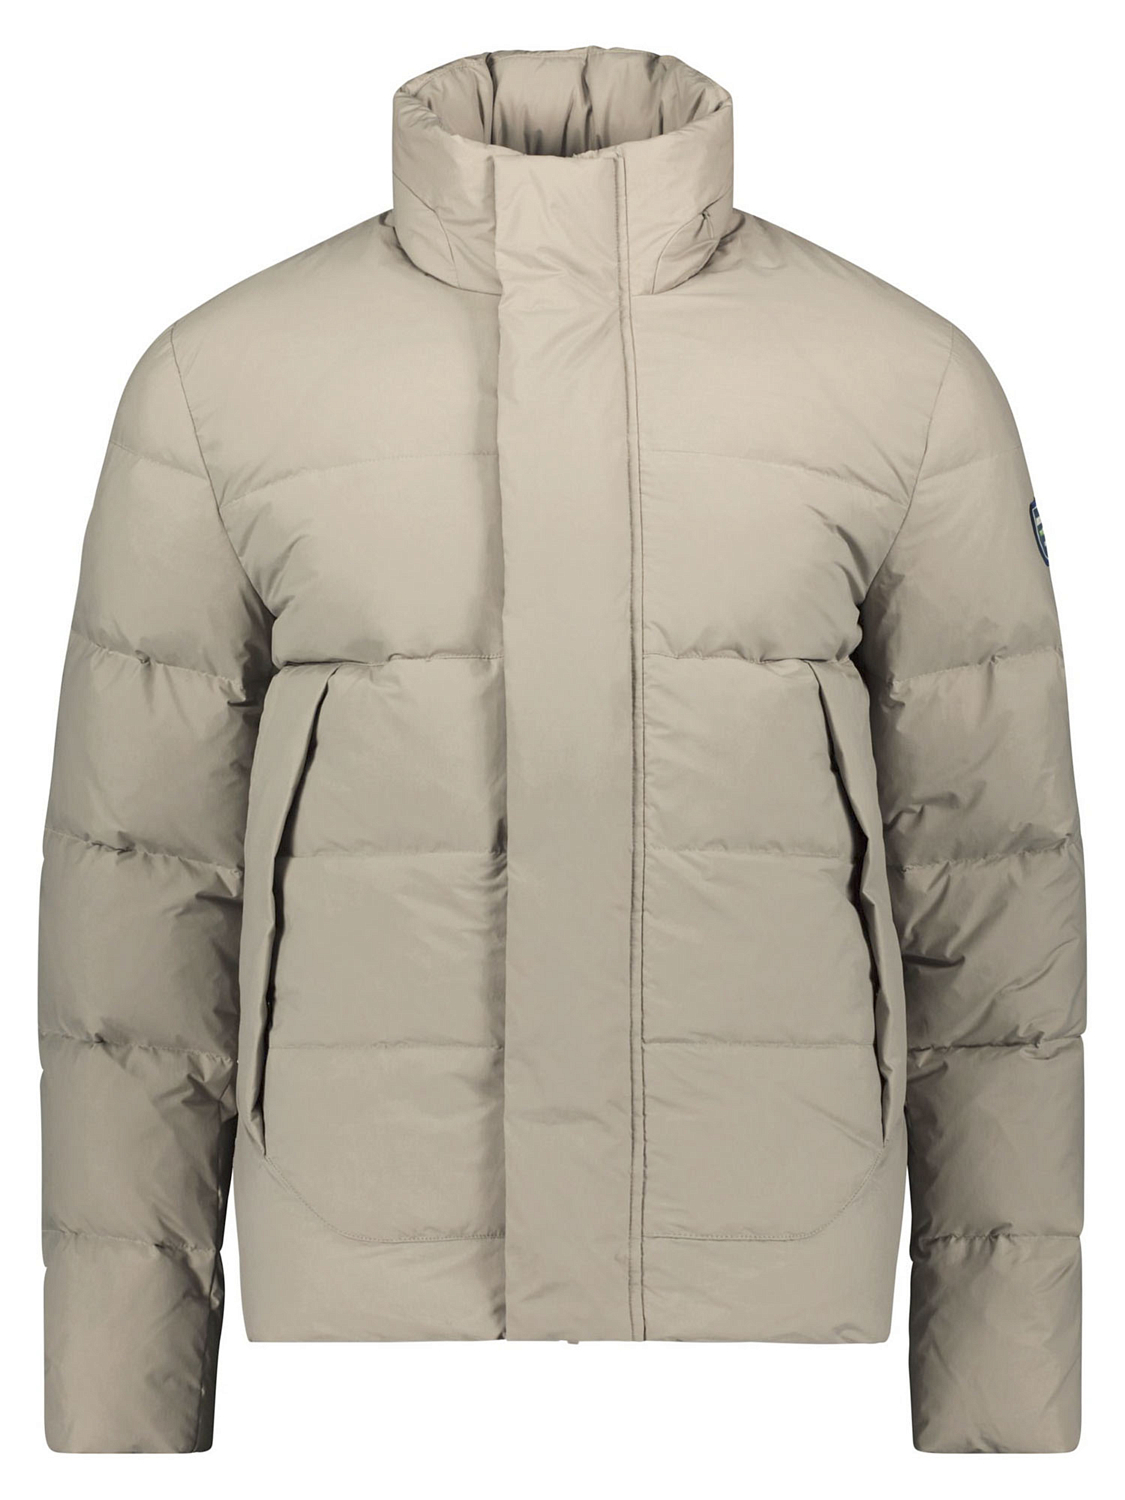 Куртка Dolomite Jacket M's Fitzroy Safari Brown